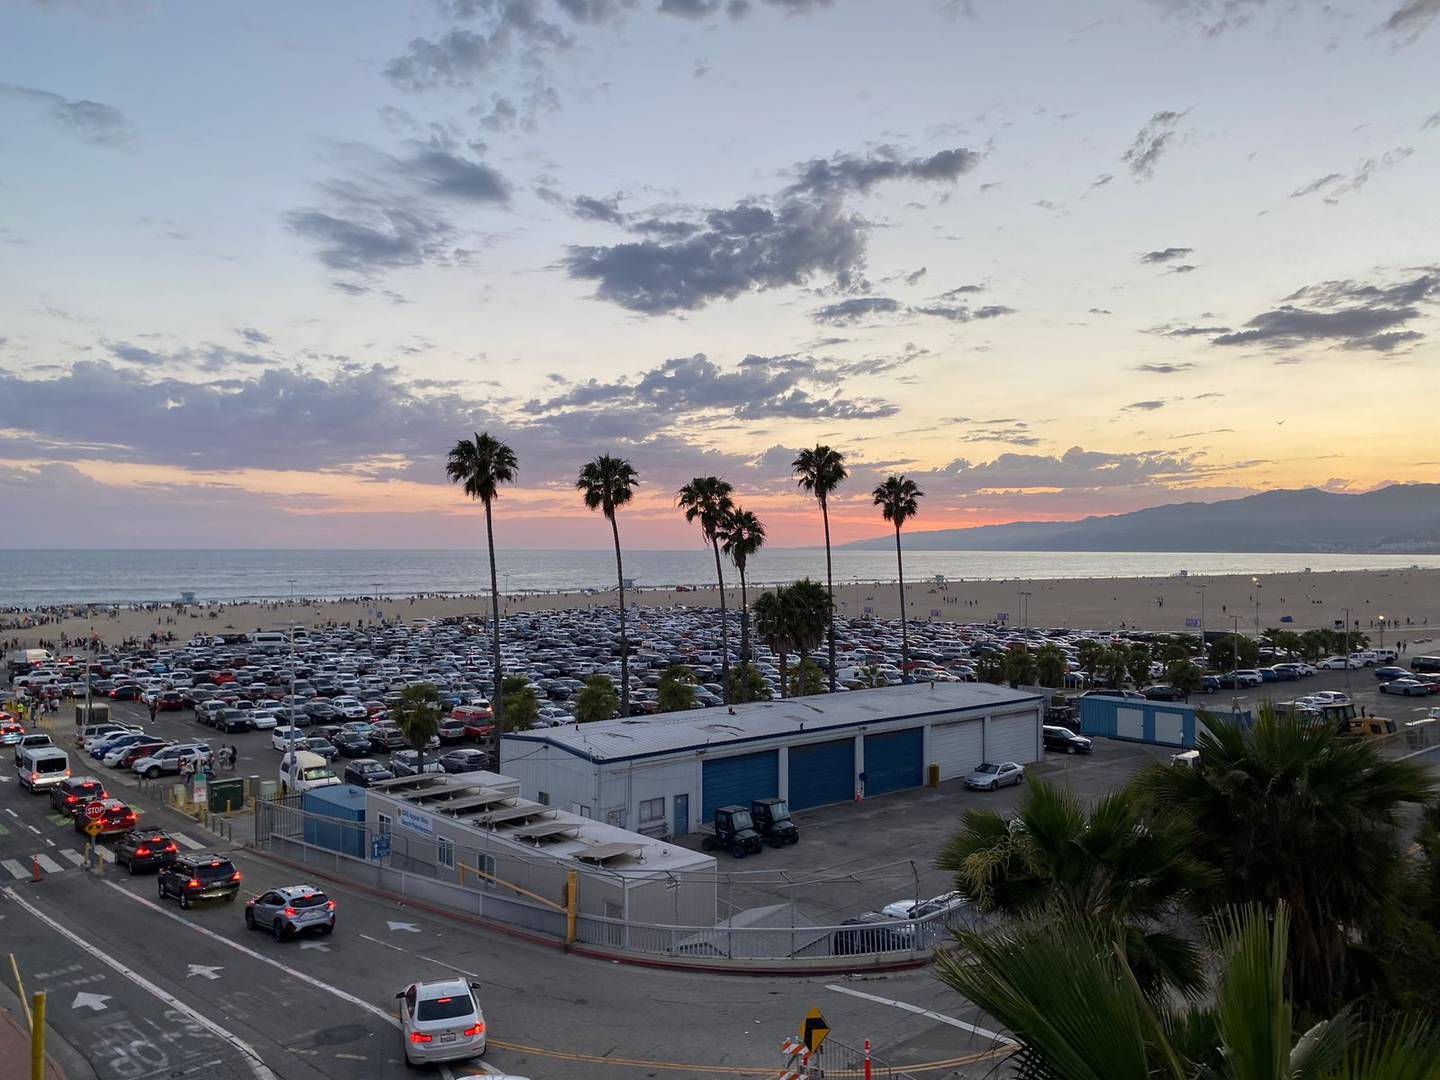 Muelle y playa de Santa Mónica, en Los Ángeles, California, Estados Unidos. Foto: Ricardo Silesky